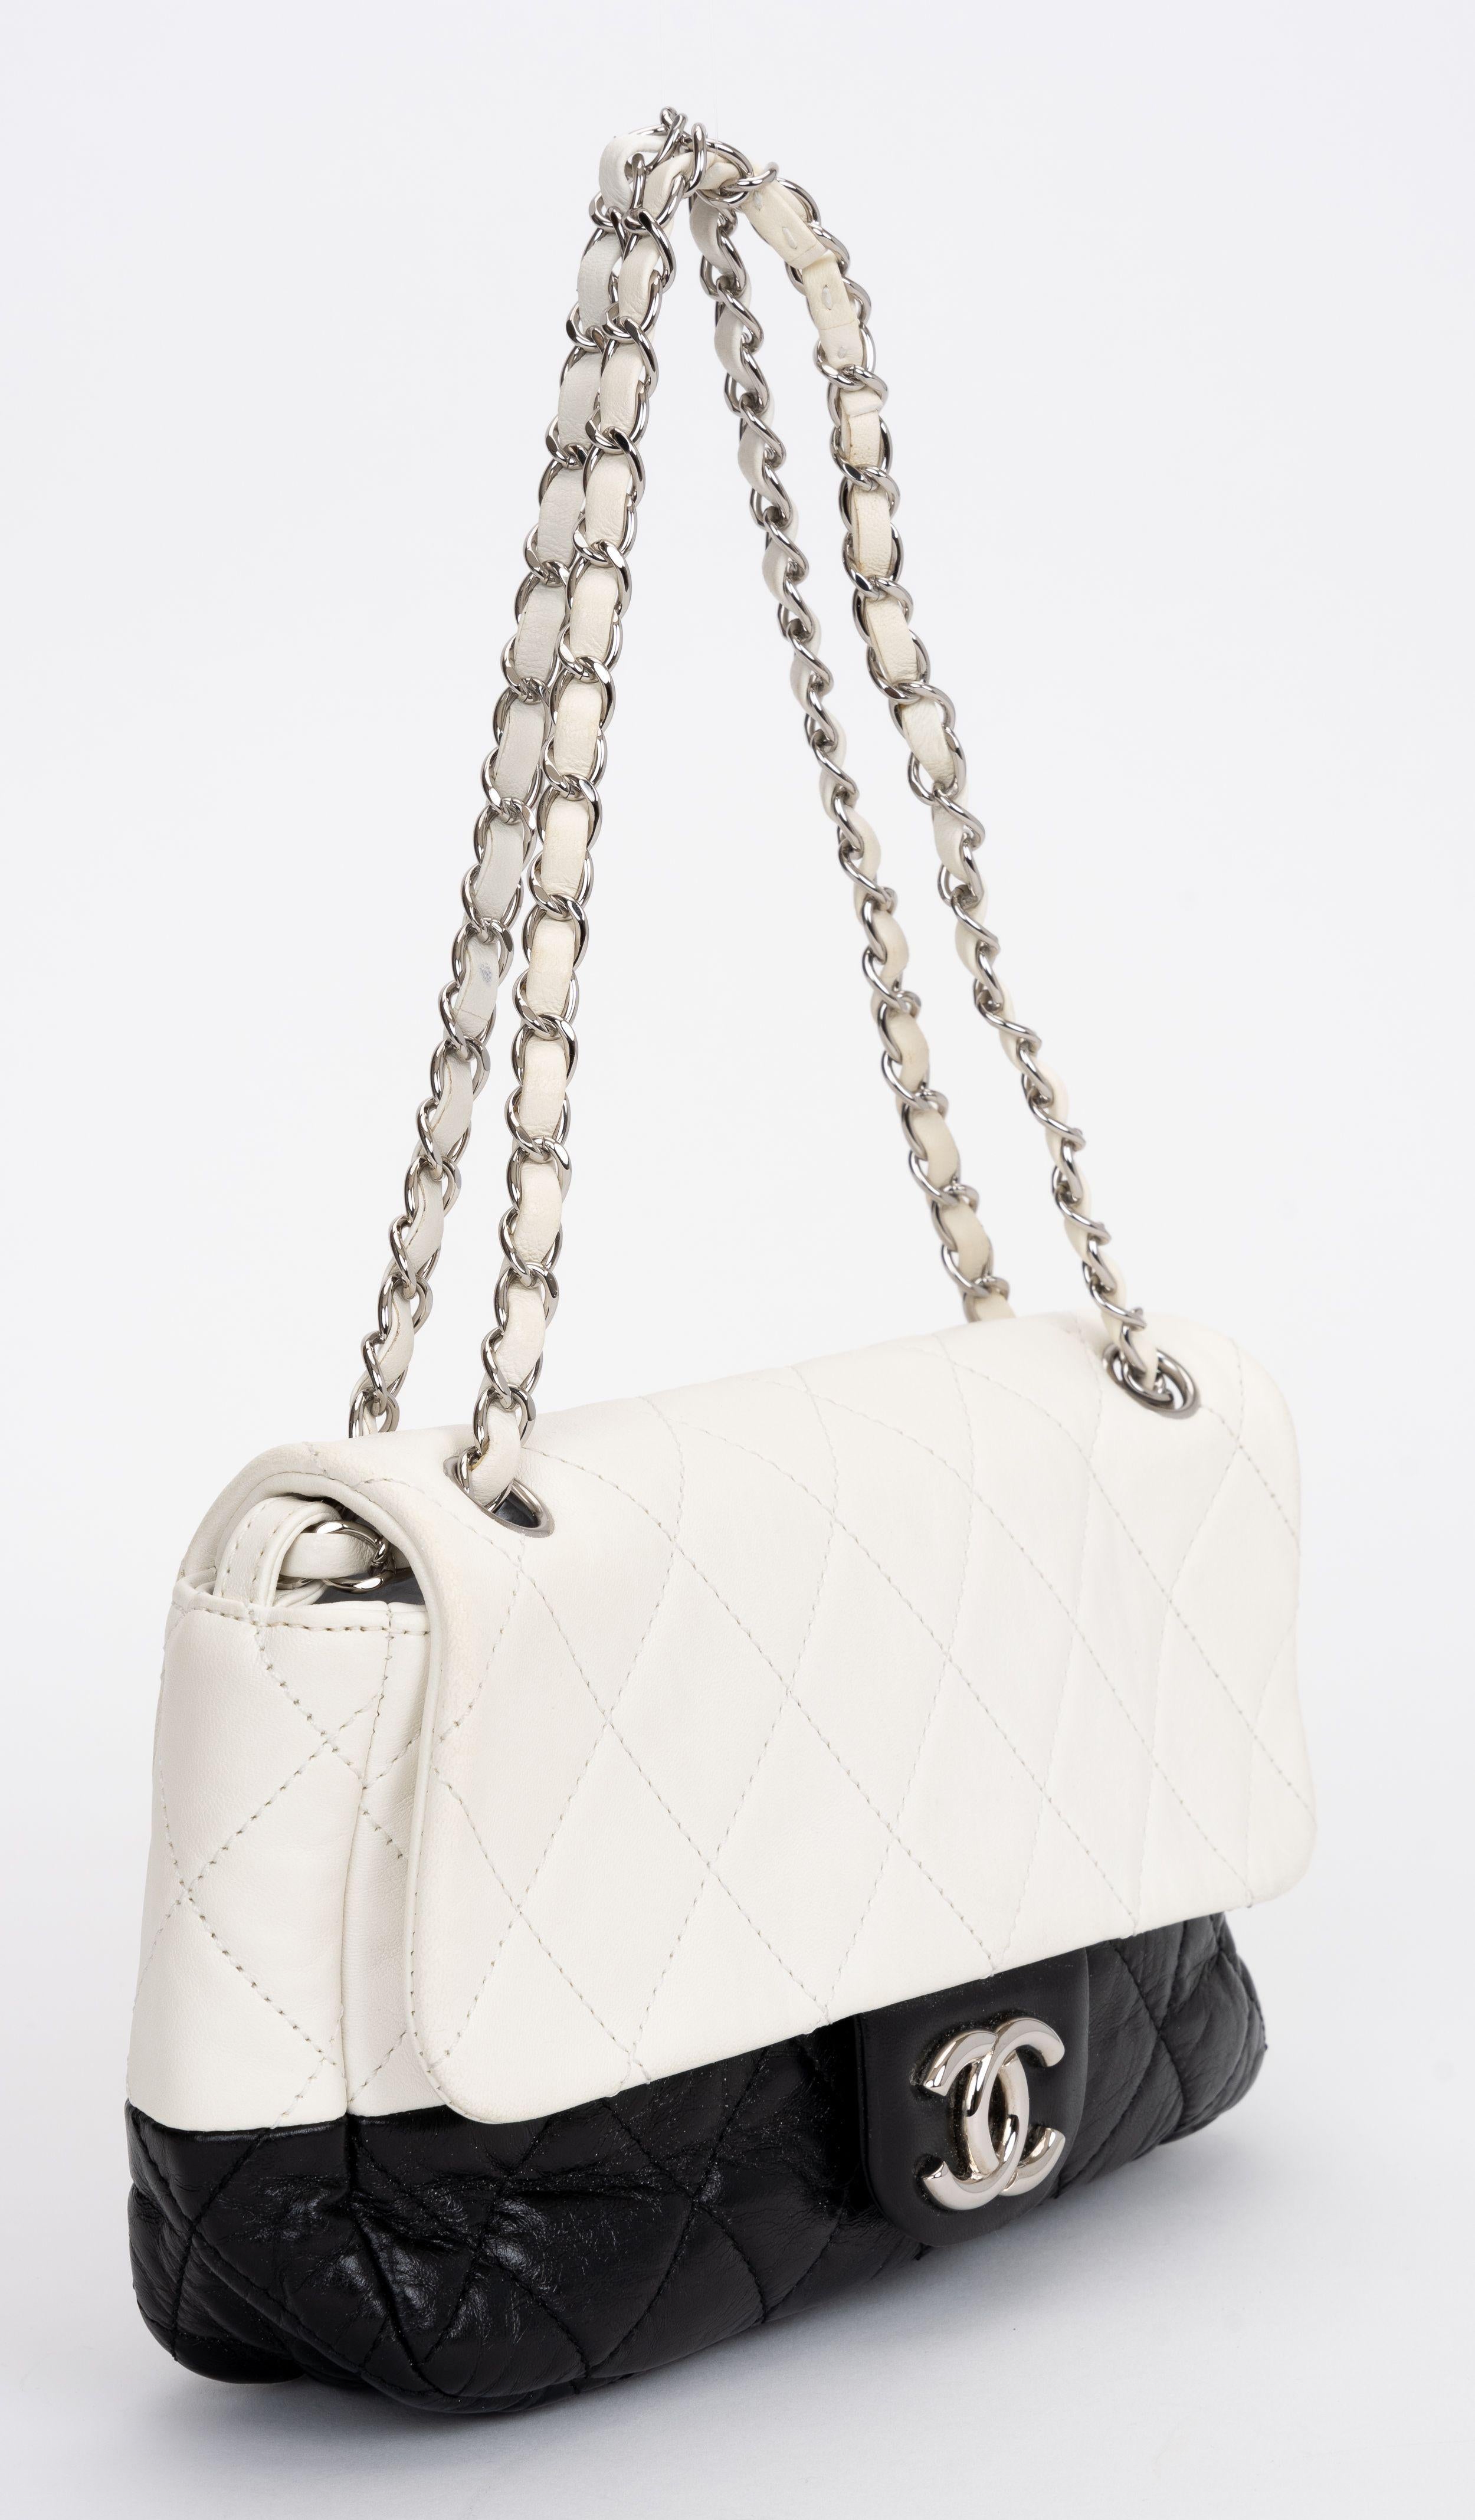 Chanel authentische Leder Crossbody Bag aus gestepptem Lammleder in zweifarbigem Schwarz und Weiß.
Schulterhöhe 7,5